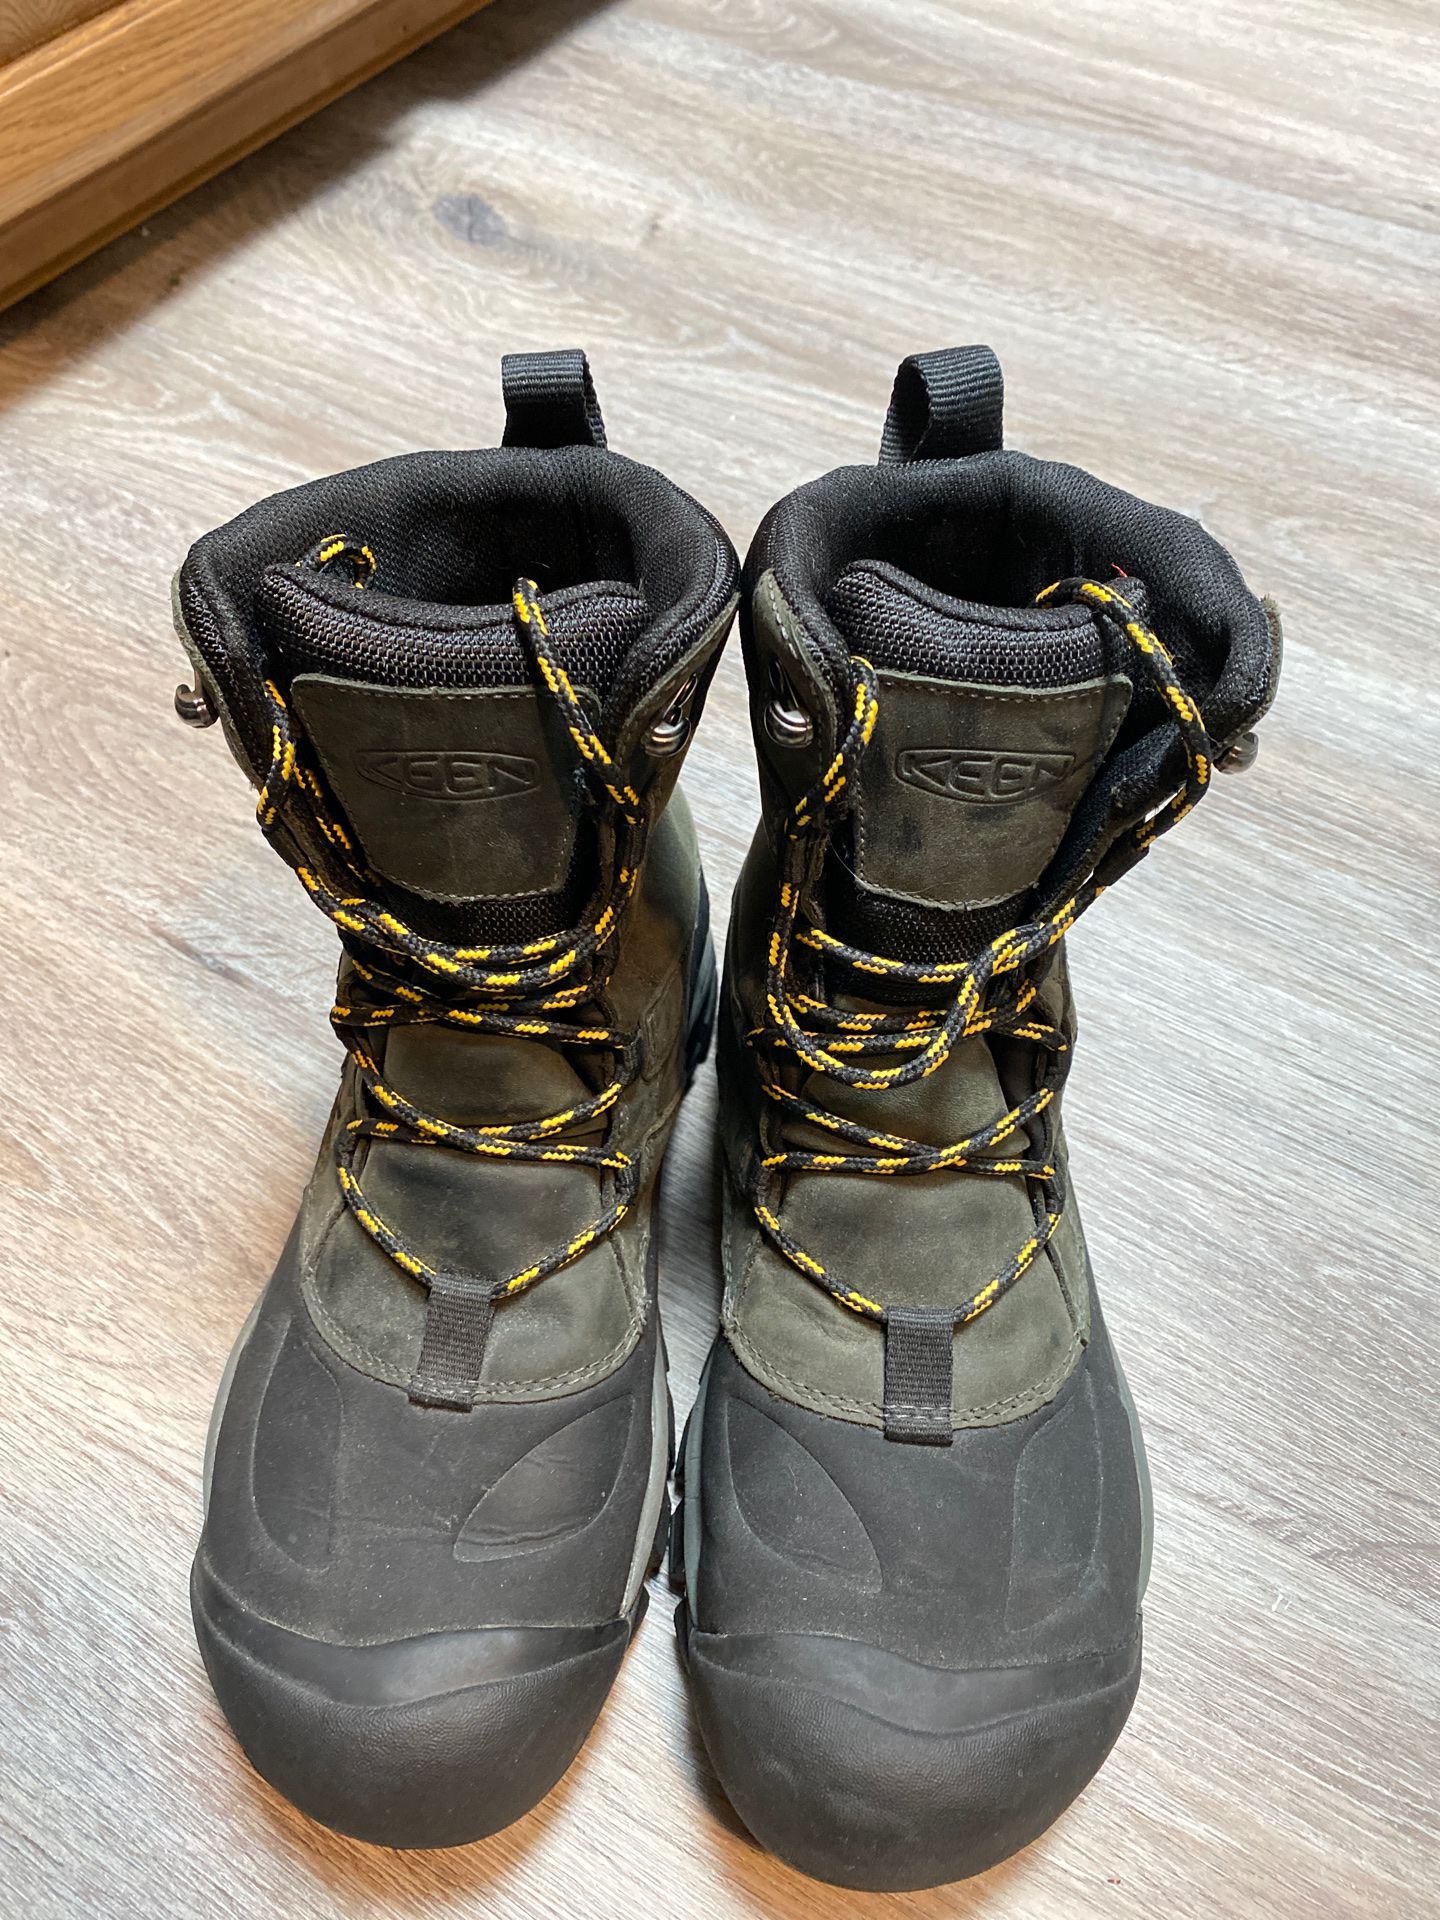 KEEN winter boots NEW